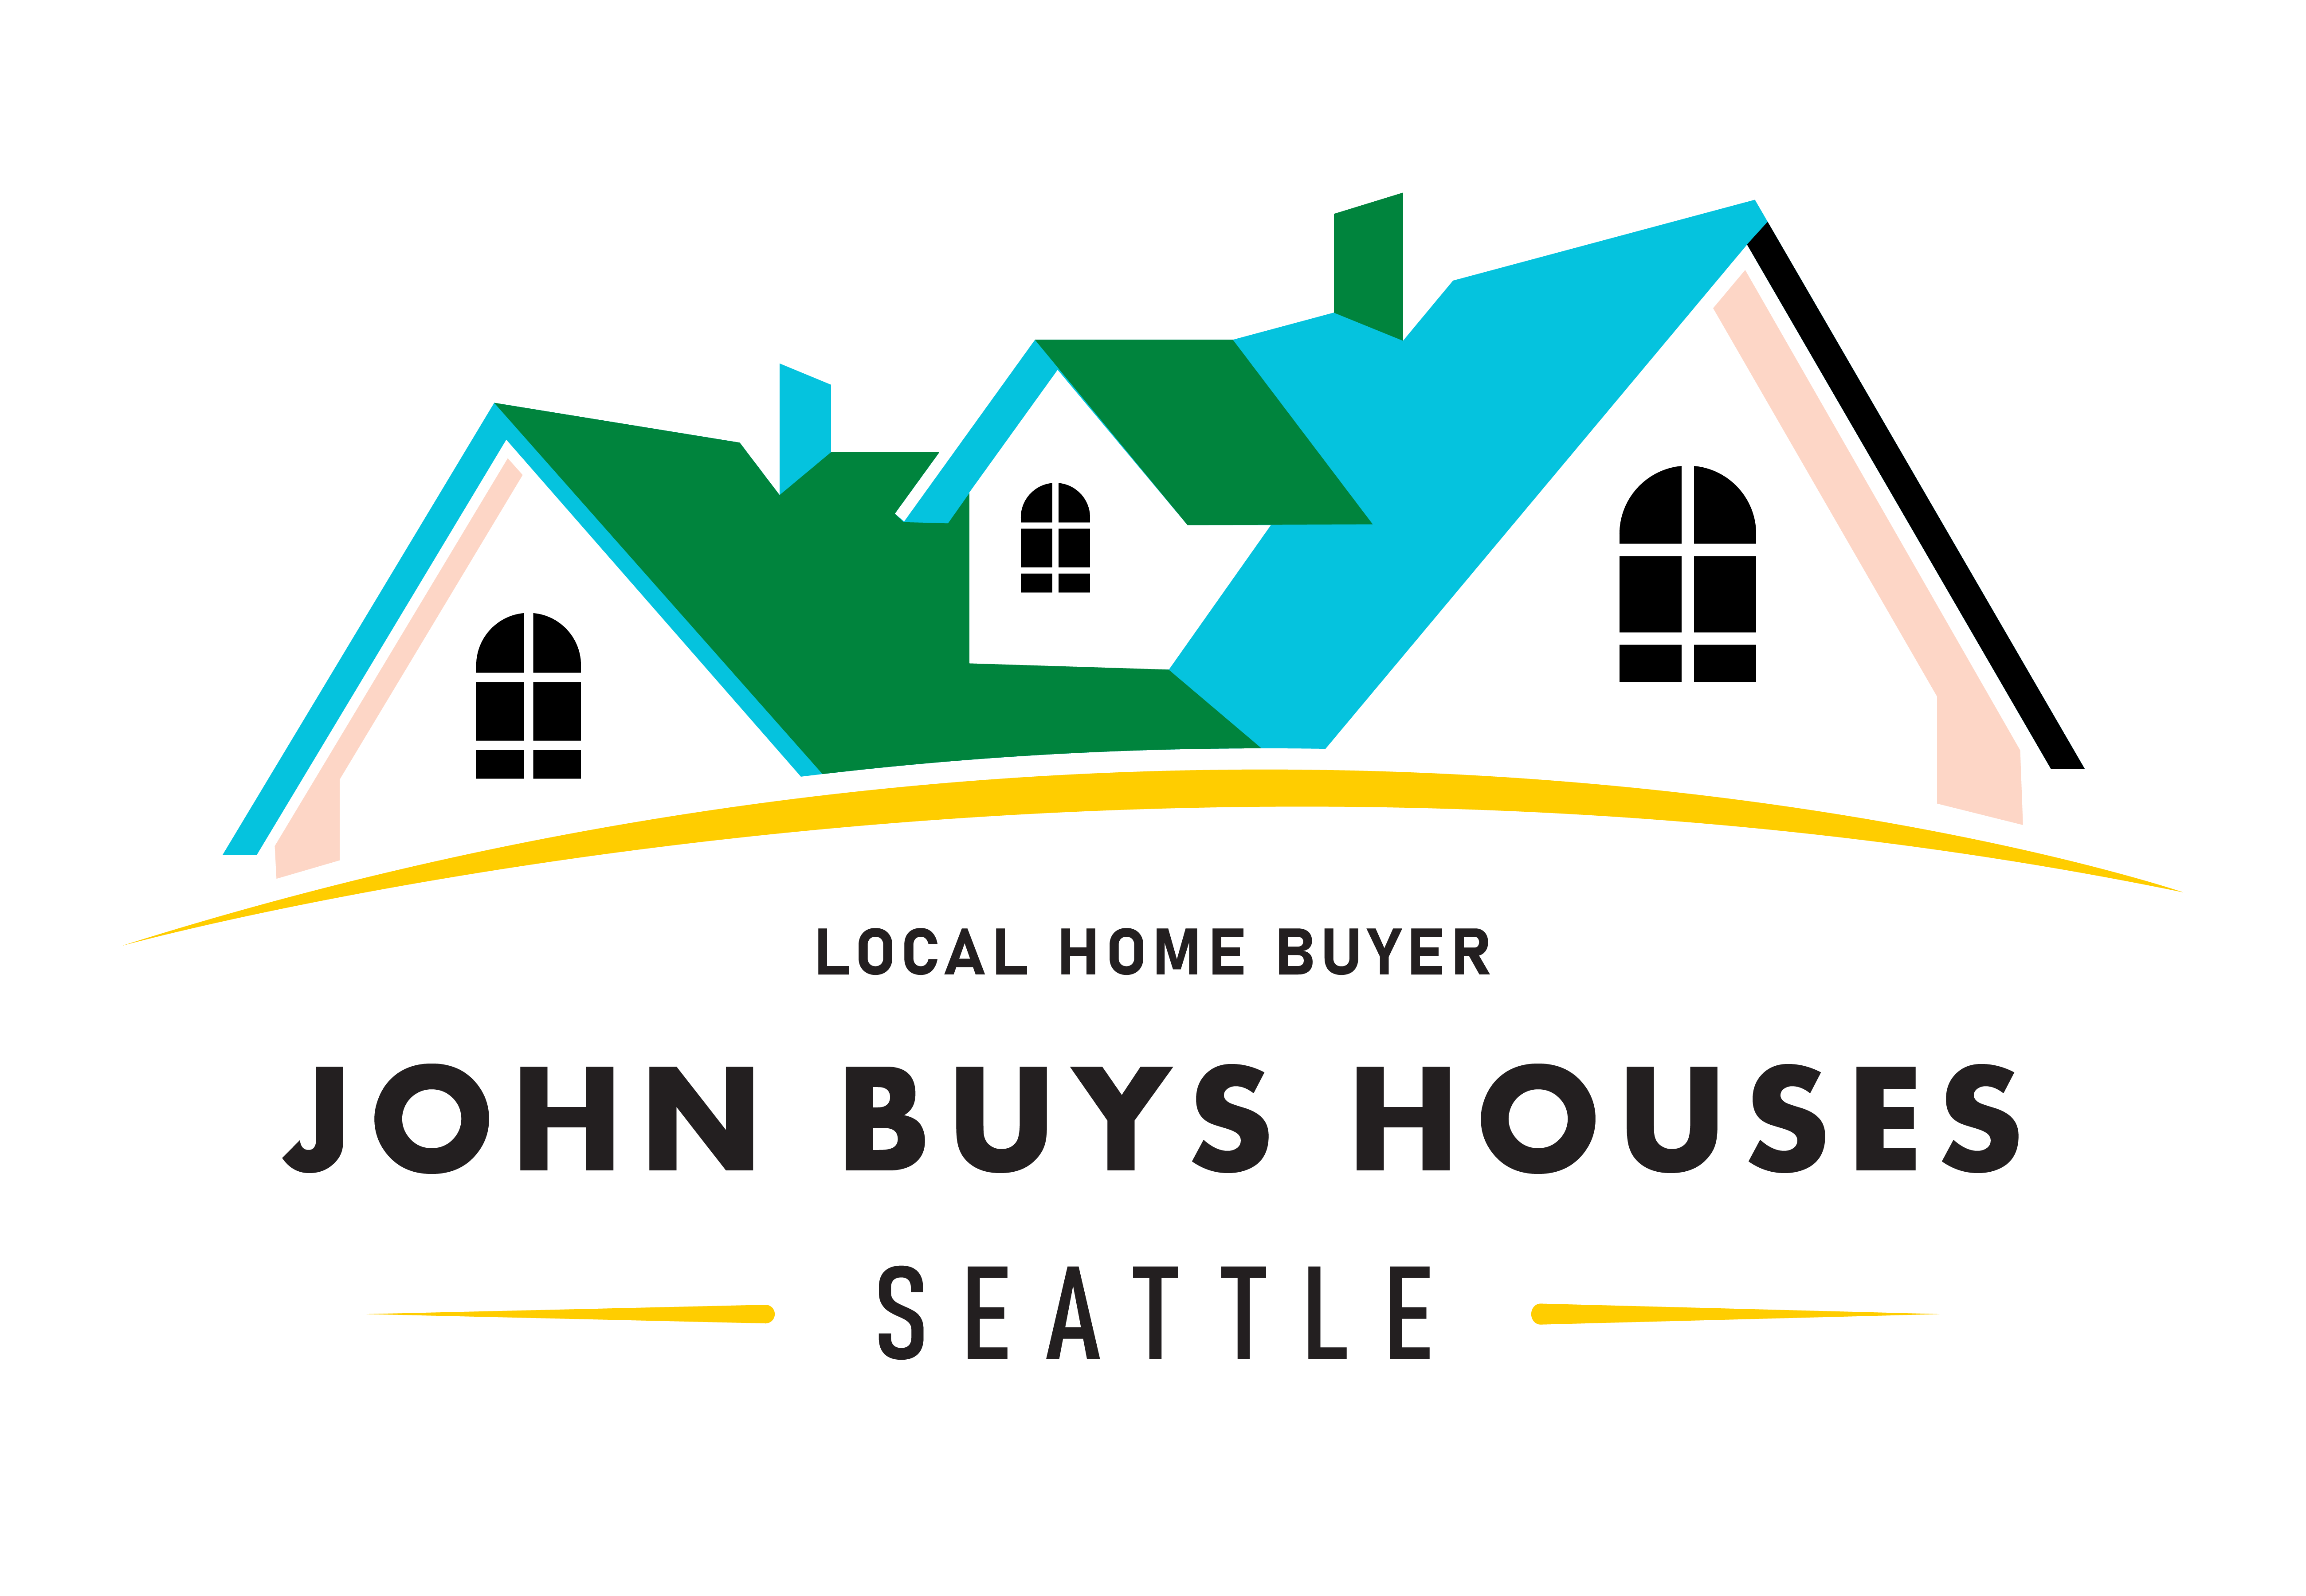 John Buys Houses in Seattle logo